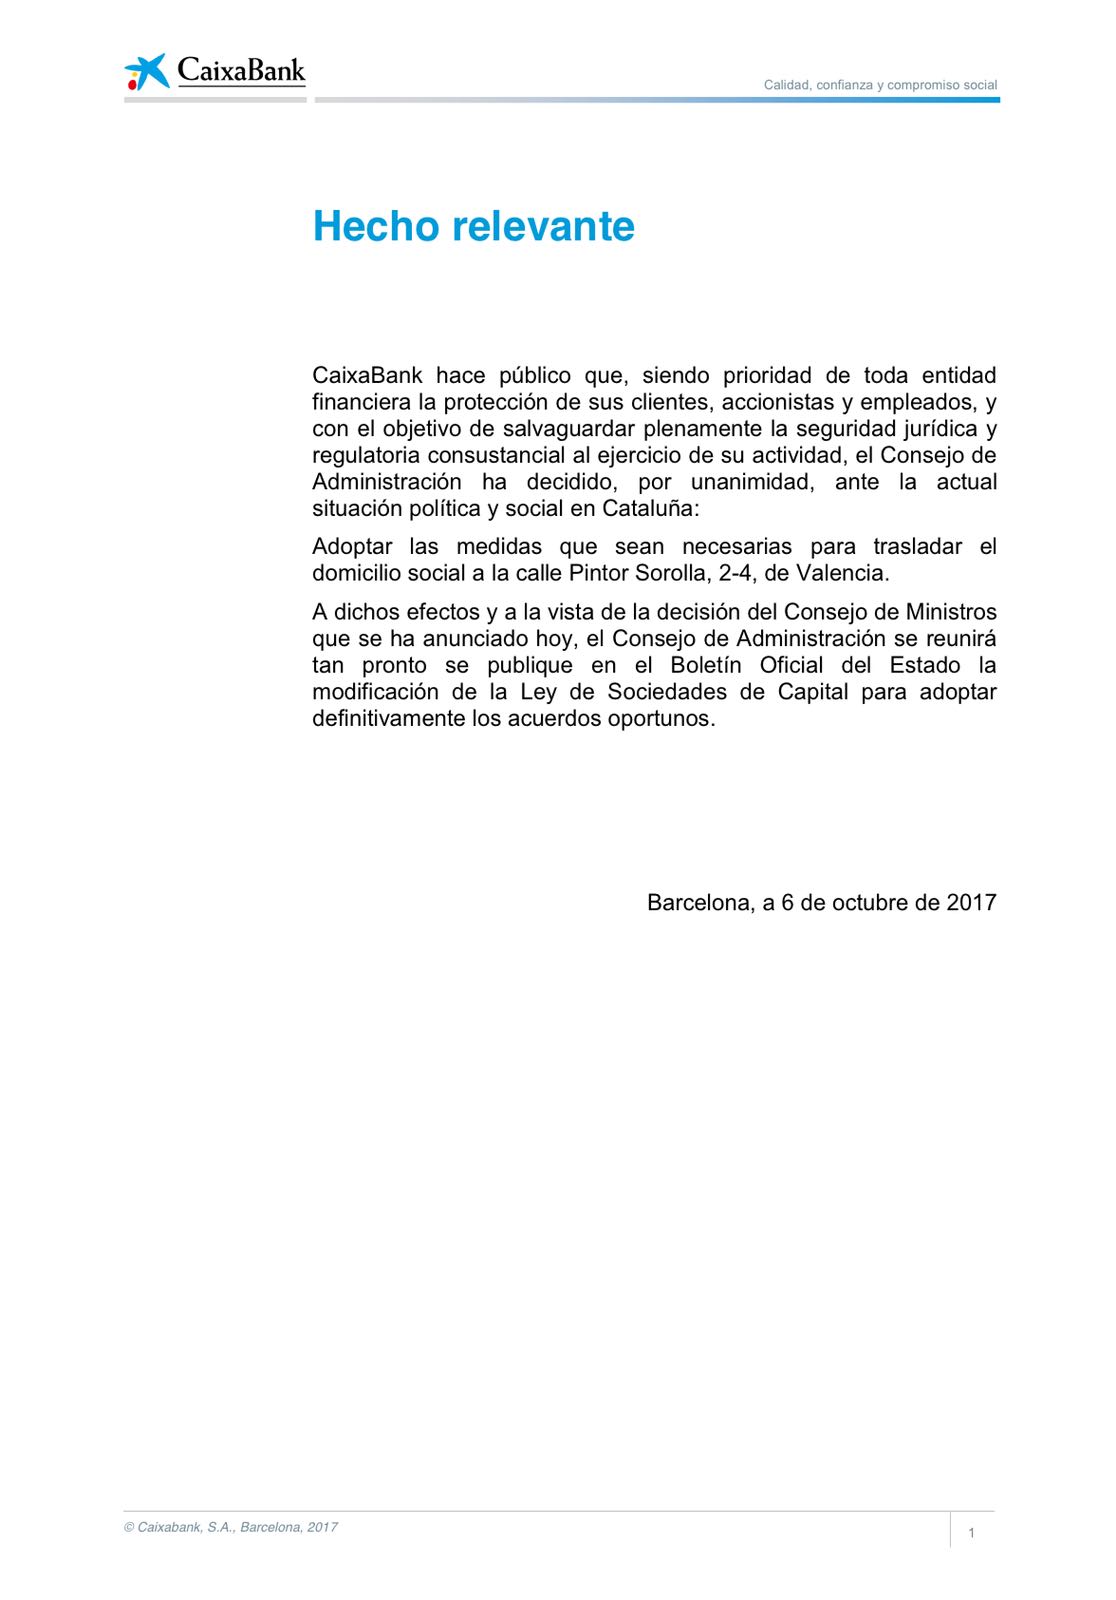 Comunicado de Caixabank en el que anuncia el cambio de su sede a Valencia. 